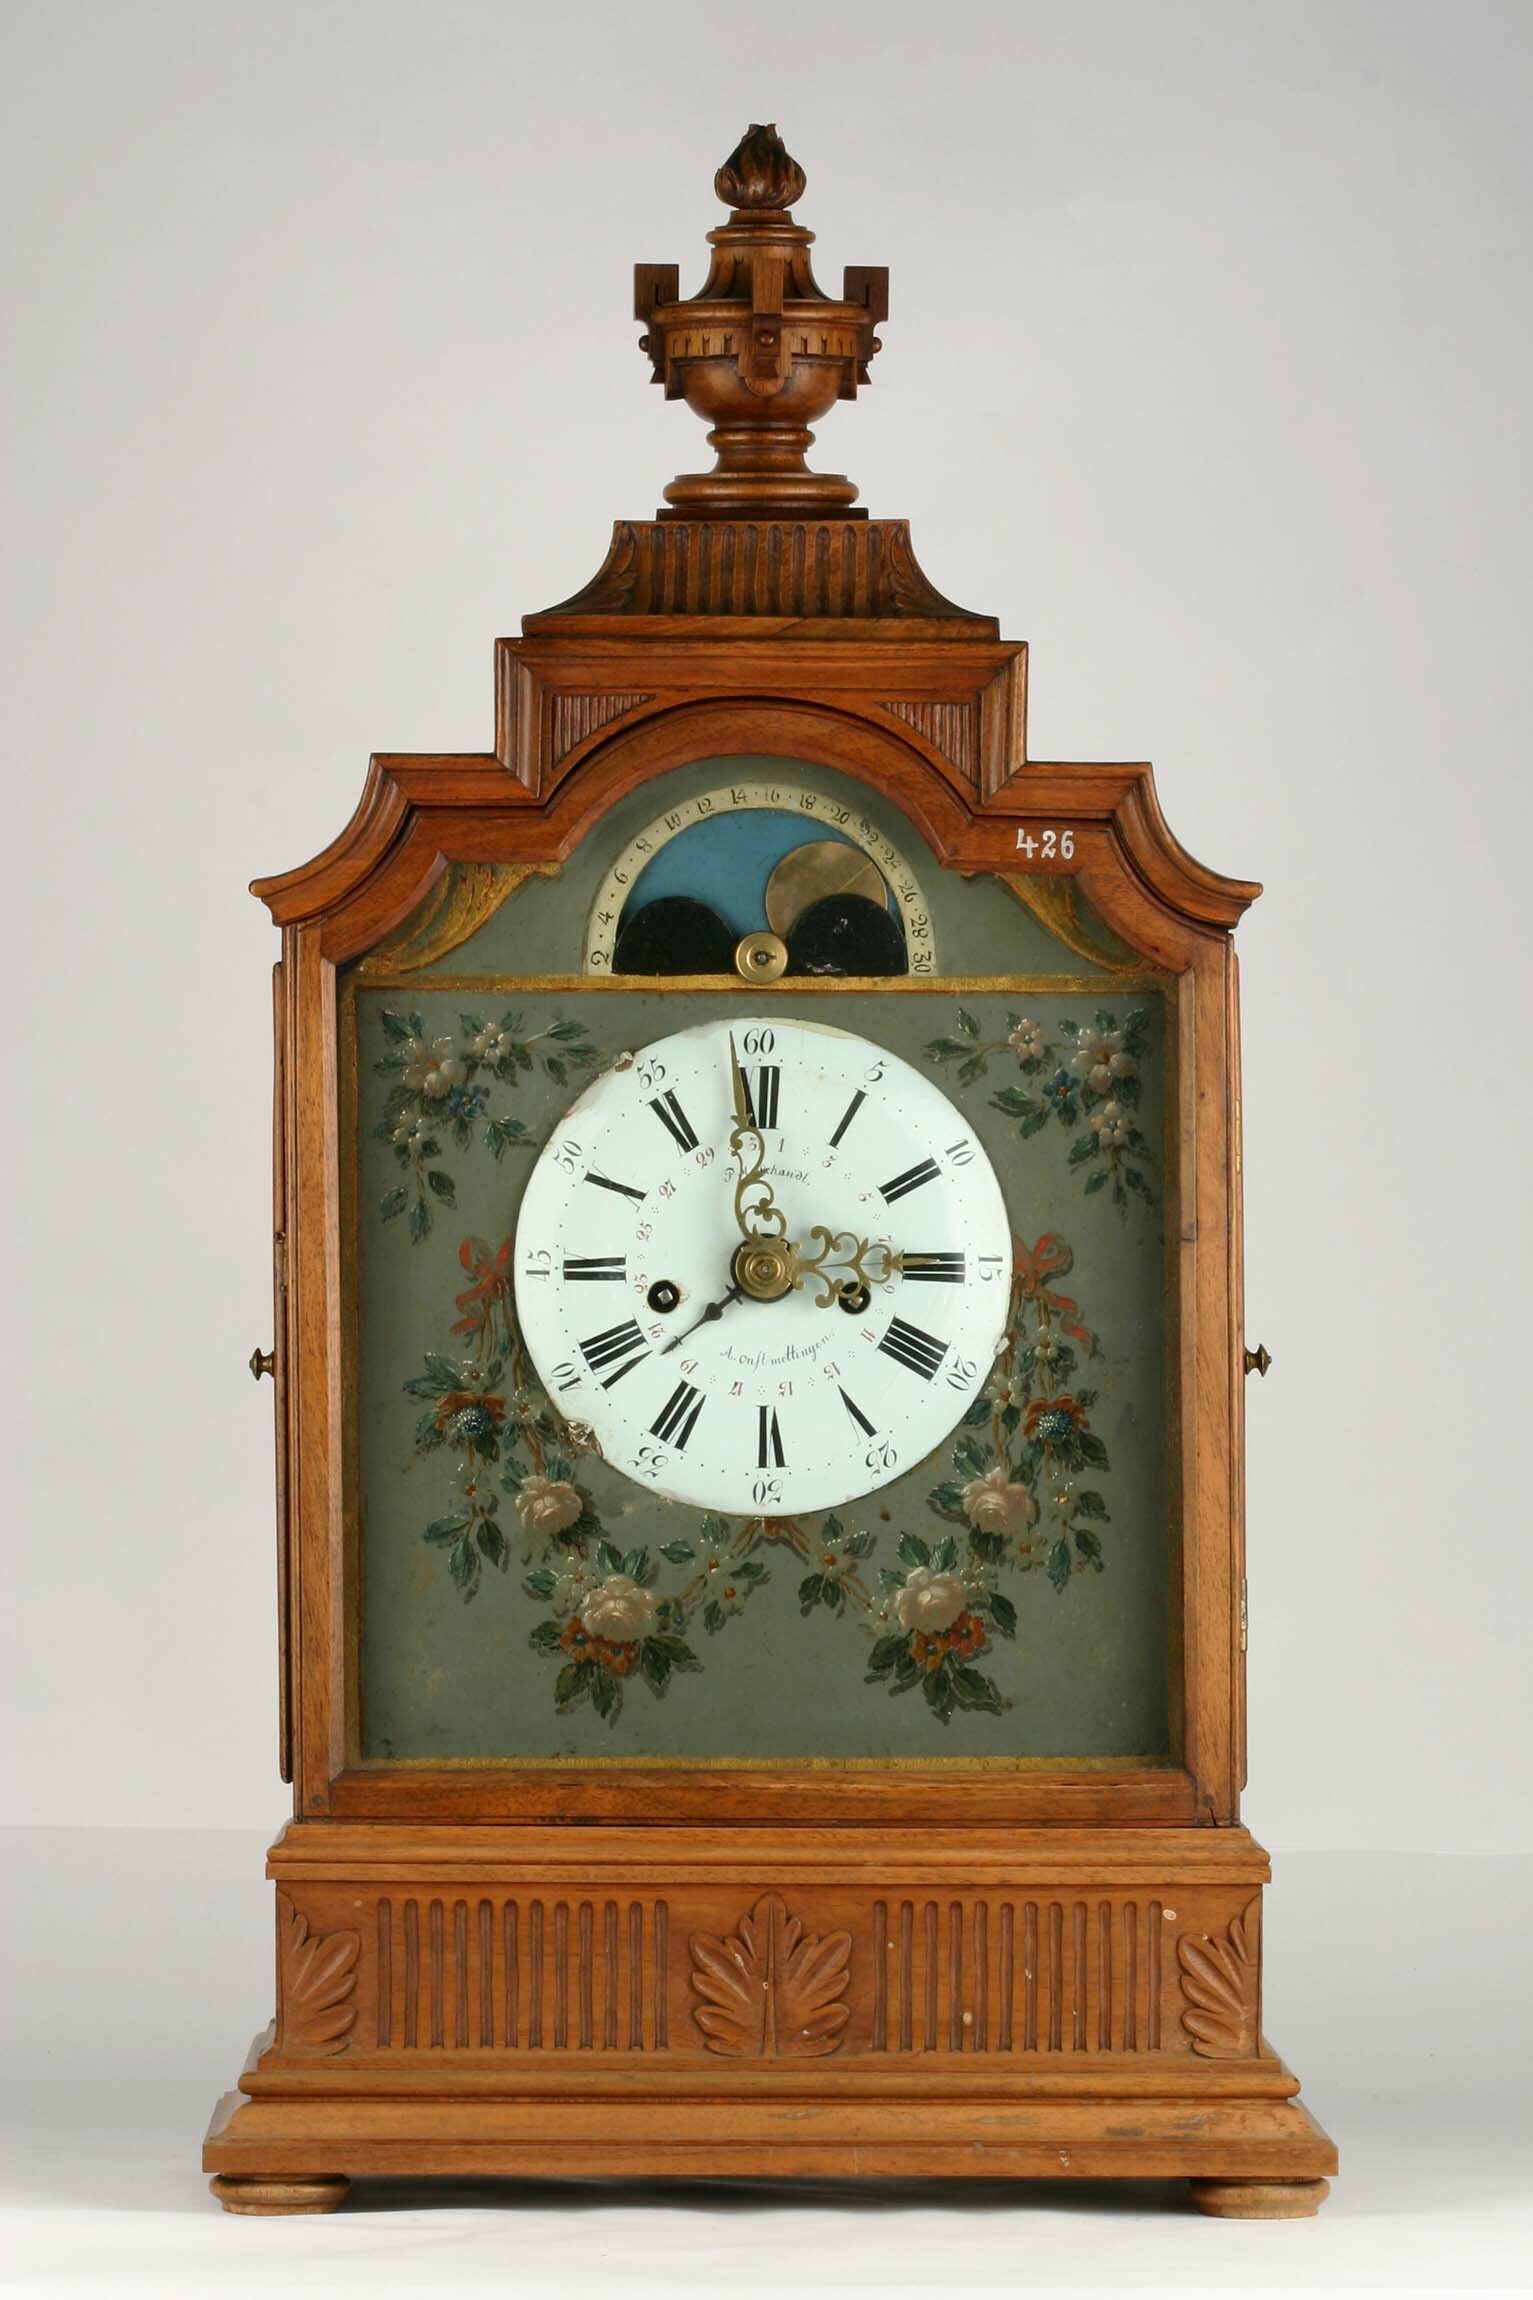 Tischuhr, Philipp Mätthäus Schaudt, Onstmettingen, um 1800 (Deutsches Uhrenmuseum CC BY-SA)